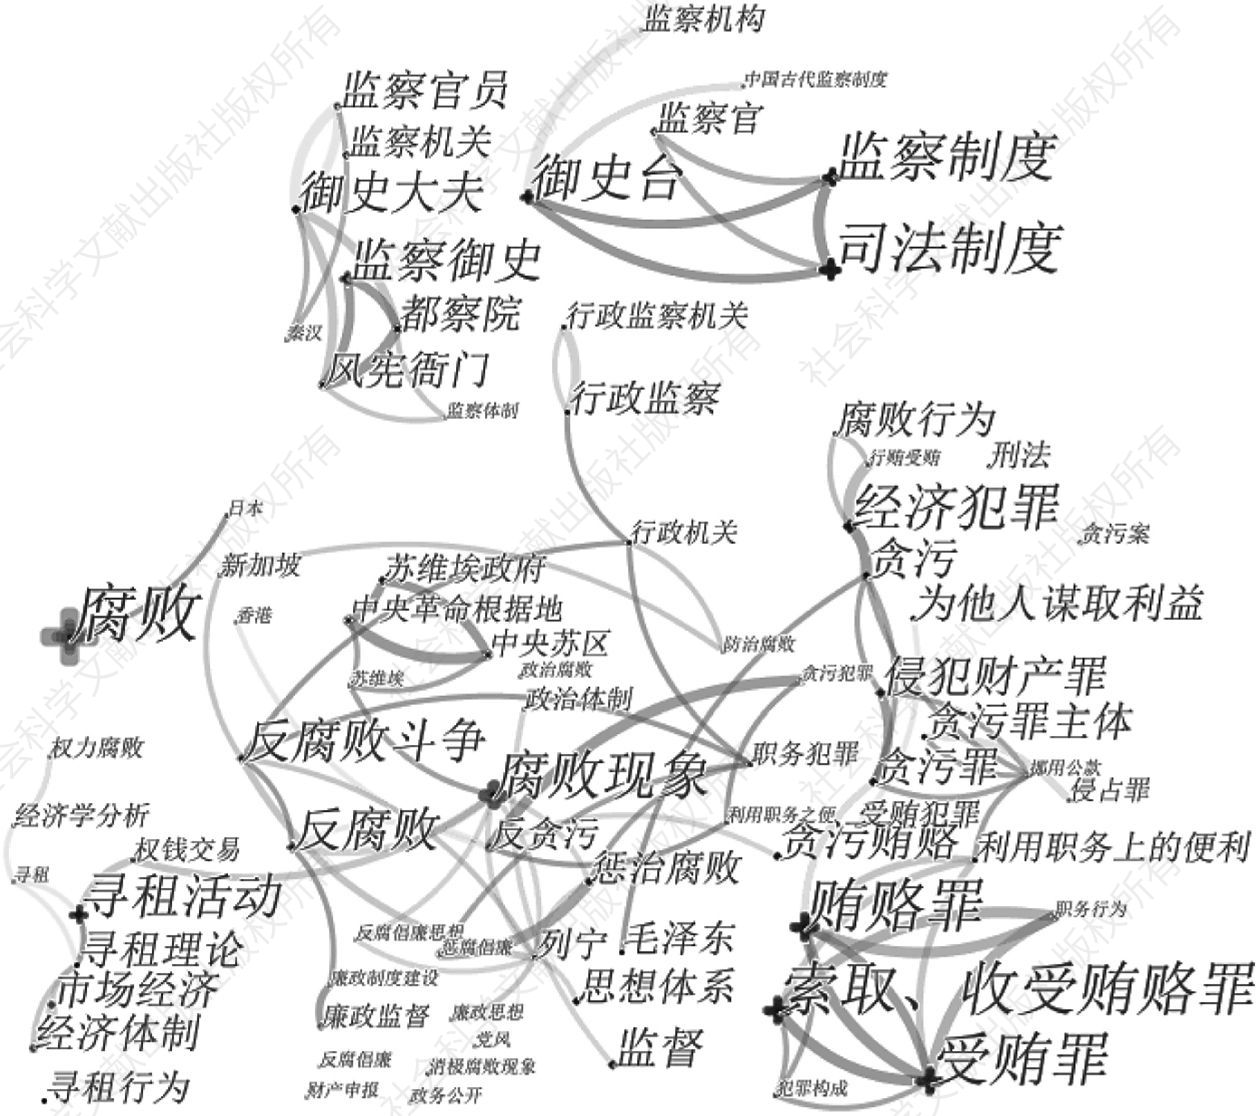 图3 1989～1998年样本文献关键词共现网络